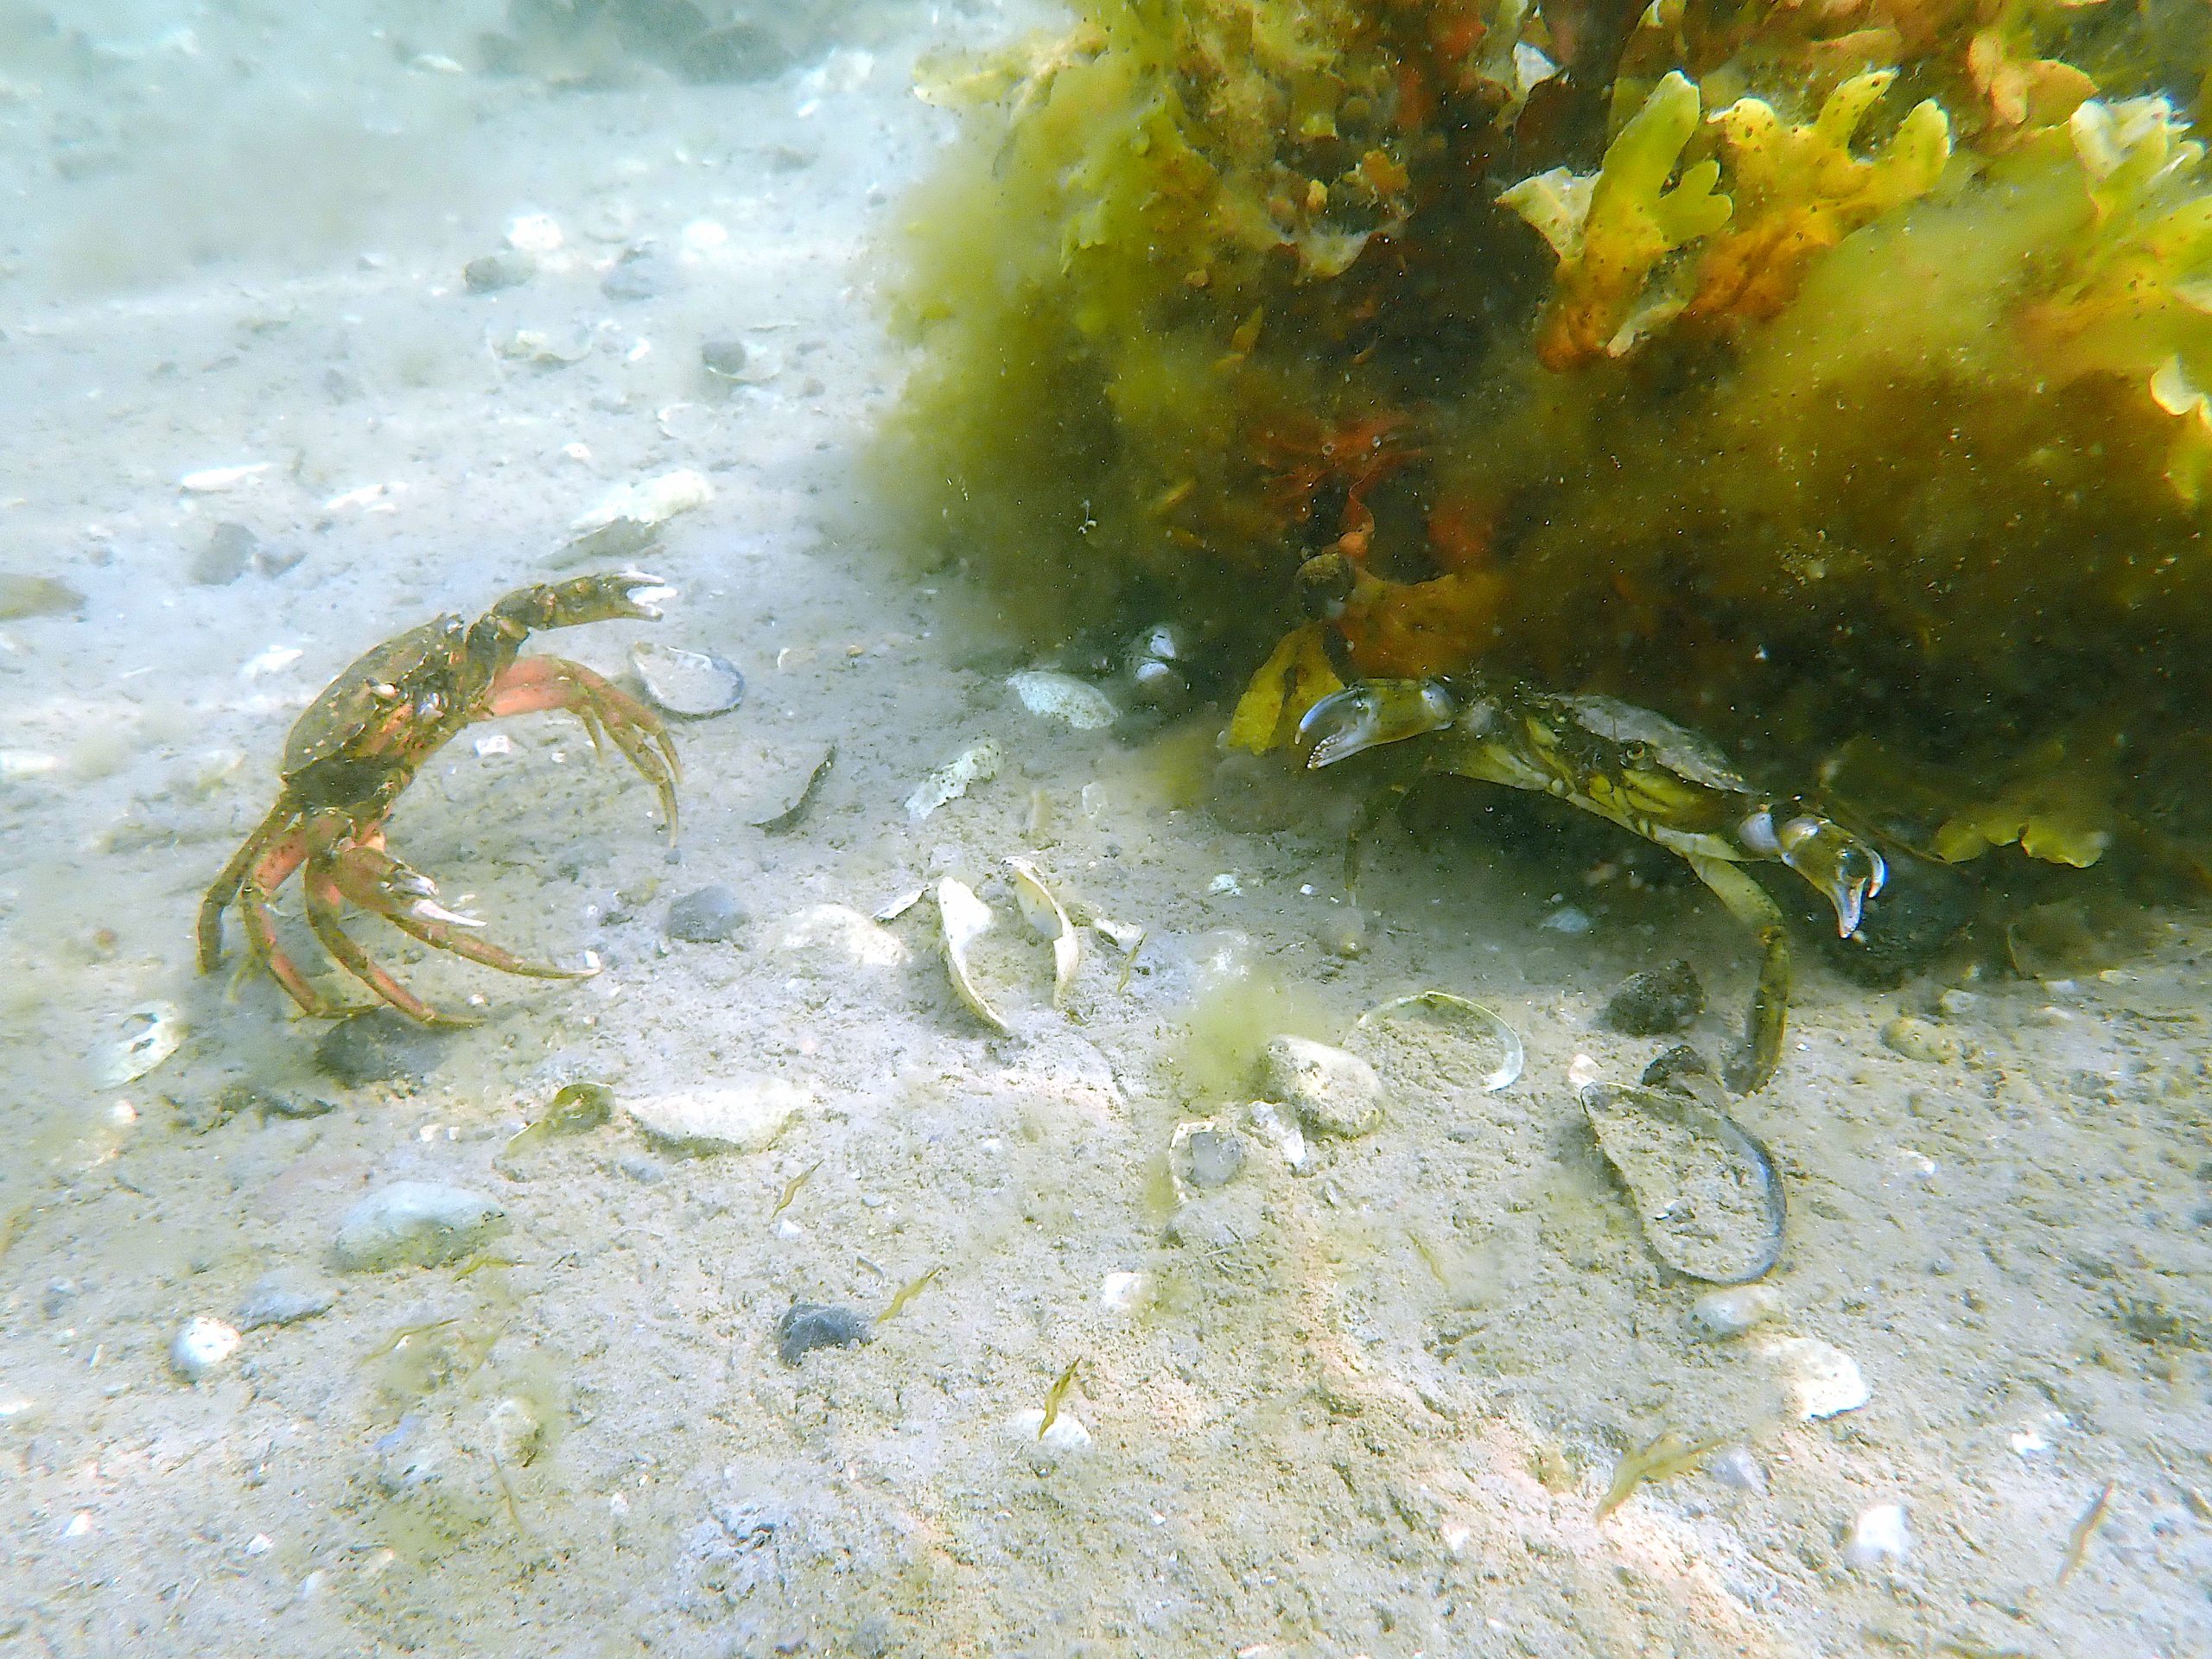 common littoral crab (Carcinus maenas)